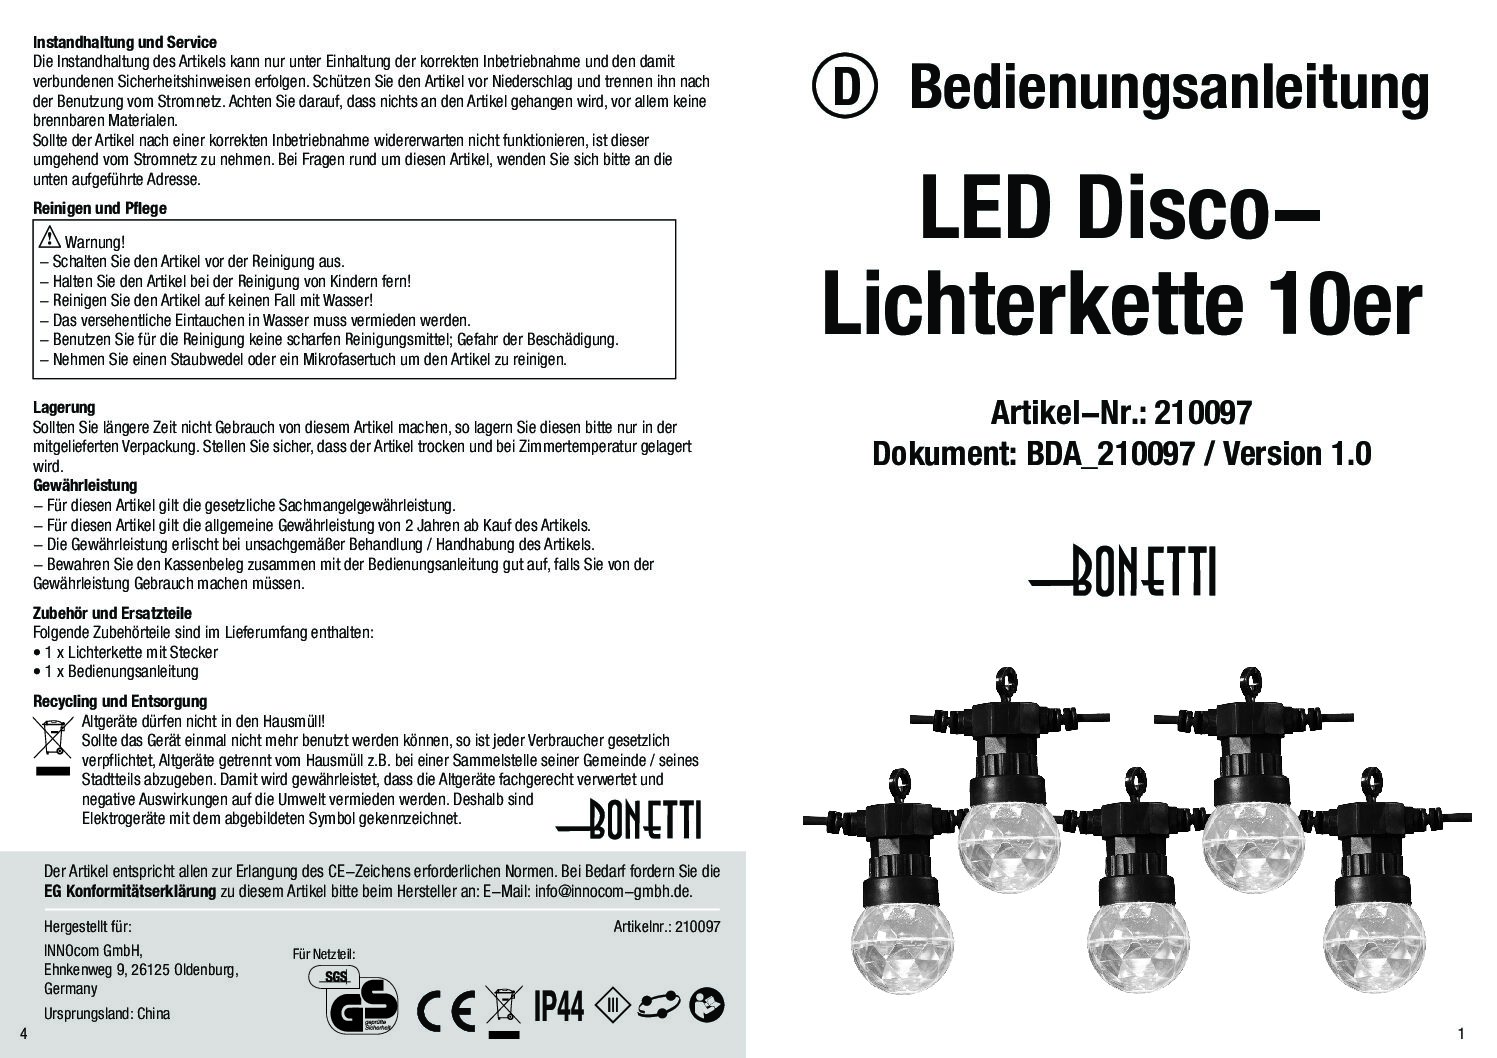 Disco-Lichterkette